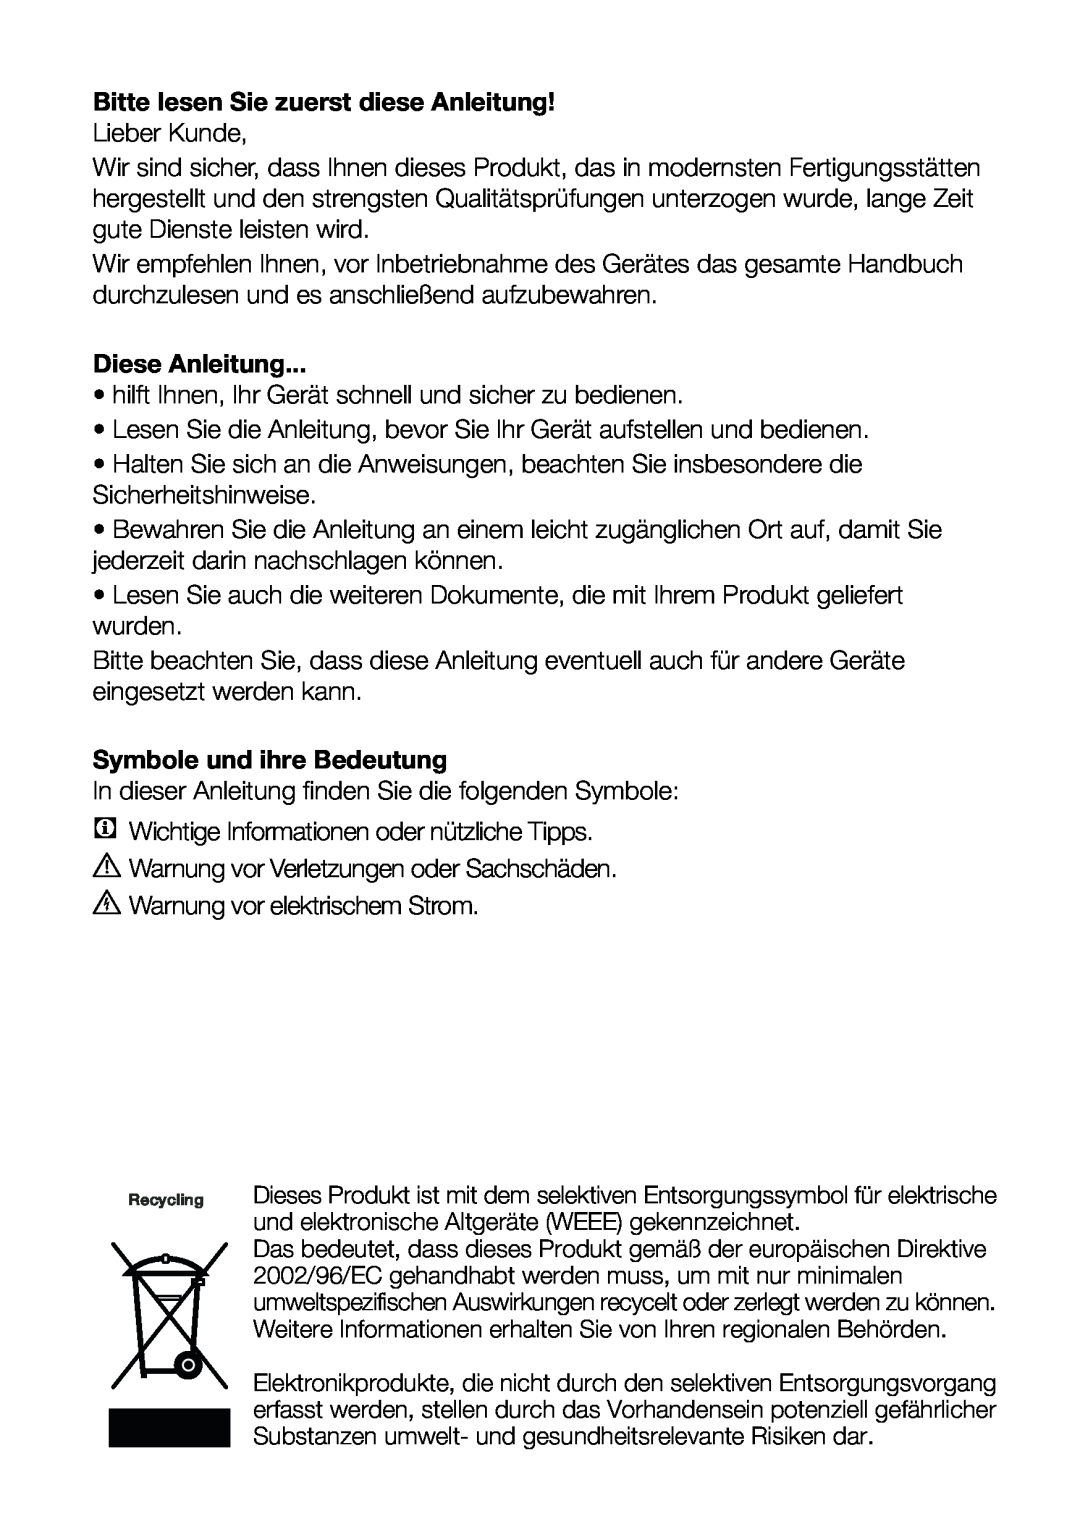 Blomberg FNT 9681 A+, FNT 9681 XA+ Bitte lesen Sie zuerst diese Anleitung, Diese Anleitung, Symbole und ihre Bedeutung 